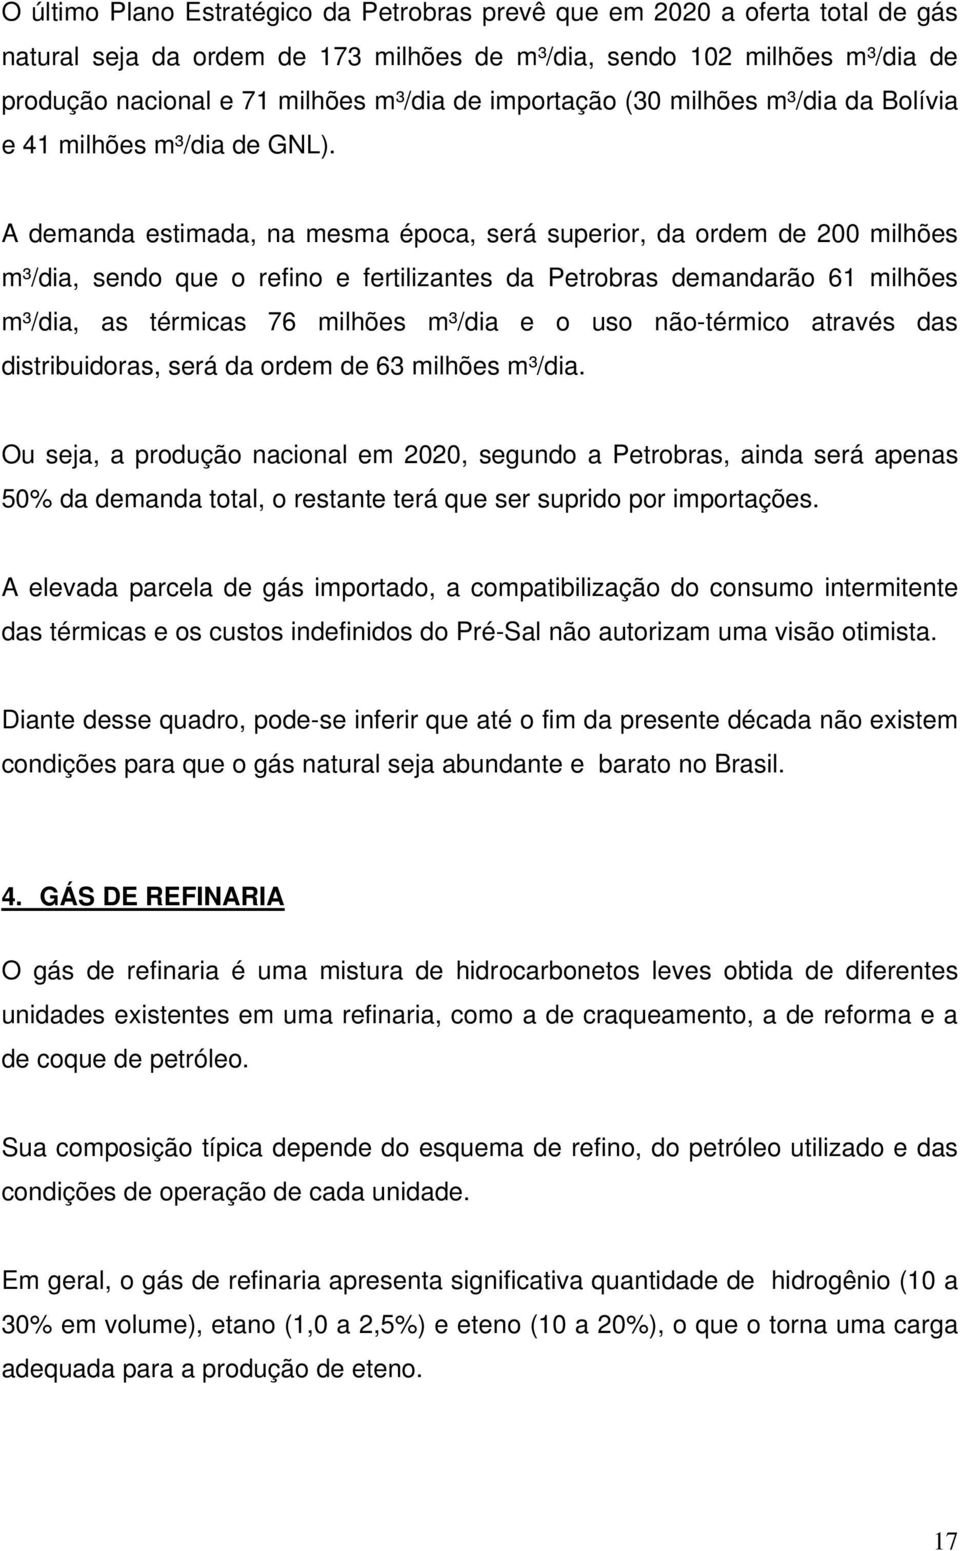 A demanda estimada, na mesma época, será superior, da ordem de 200 milhões m³/dia, sendo que o refino e fertilizantes da Petrobras demandarão 61 milhões m³/dia, as térmicas 76 milhões m³/dia e o uso